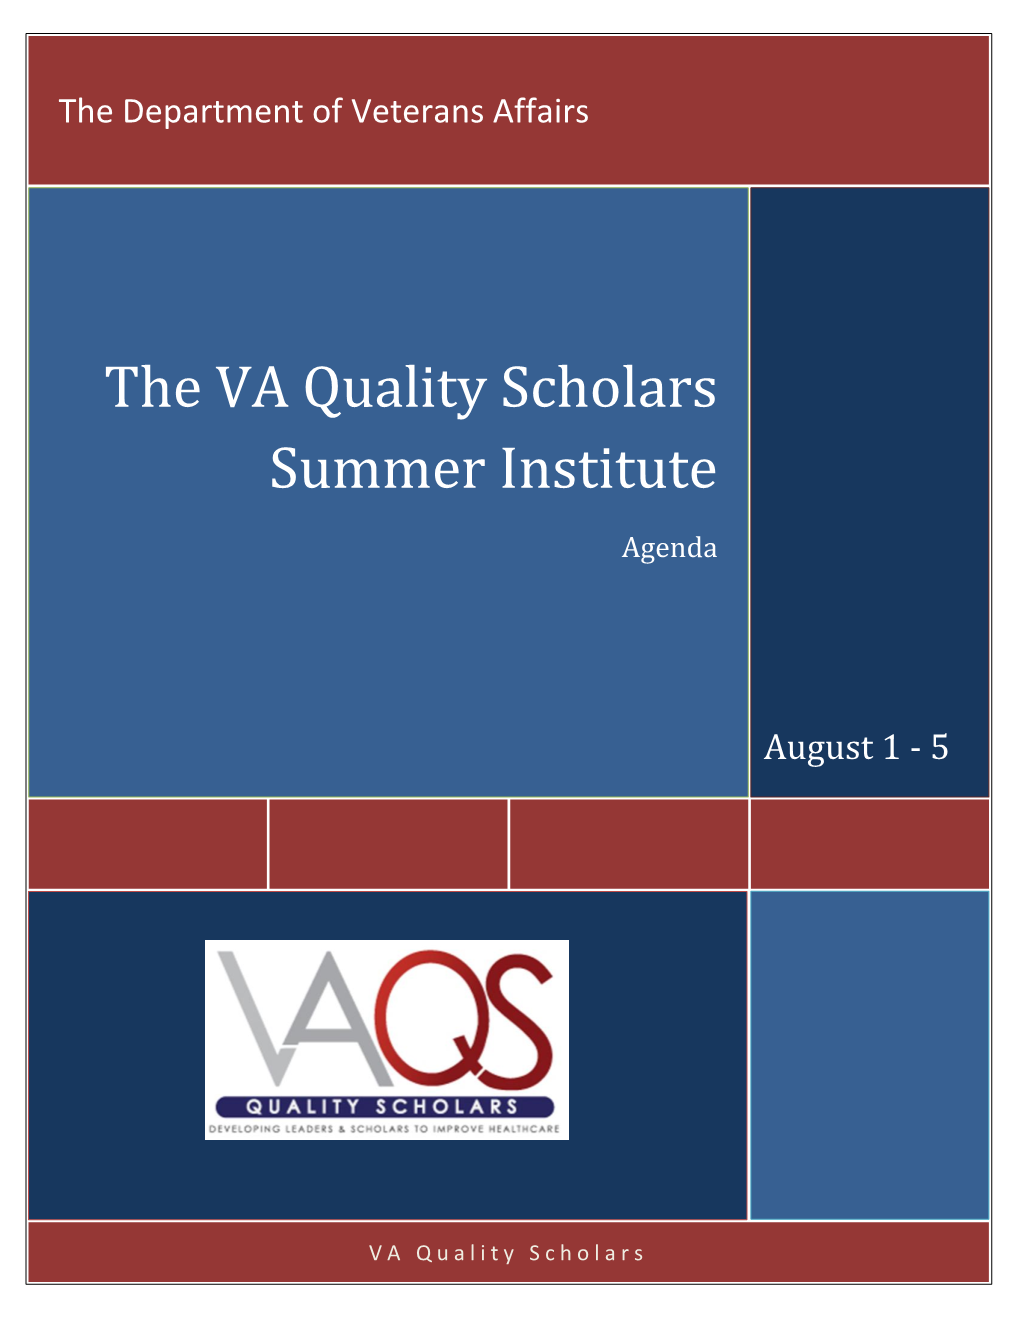 The VA Quality Scholars Summer Institute